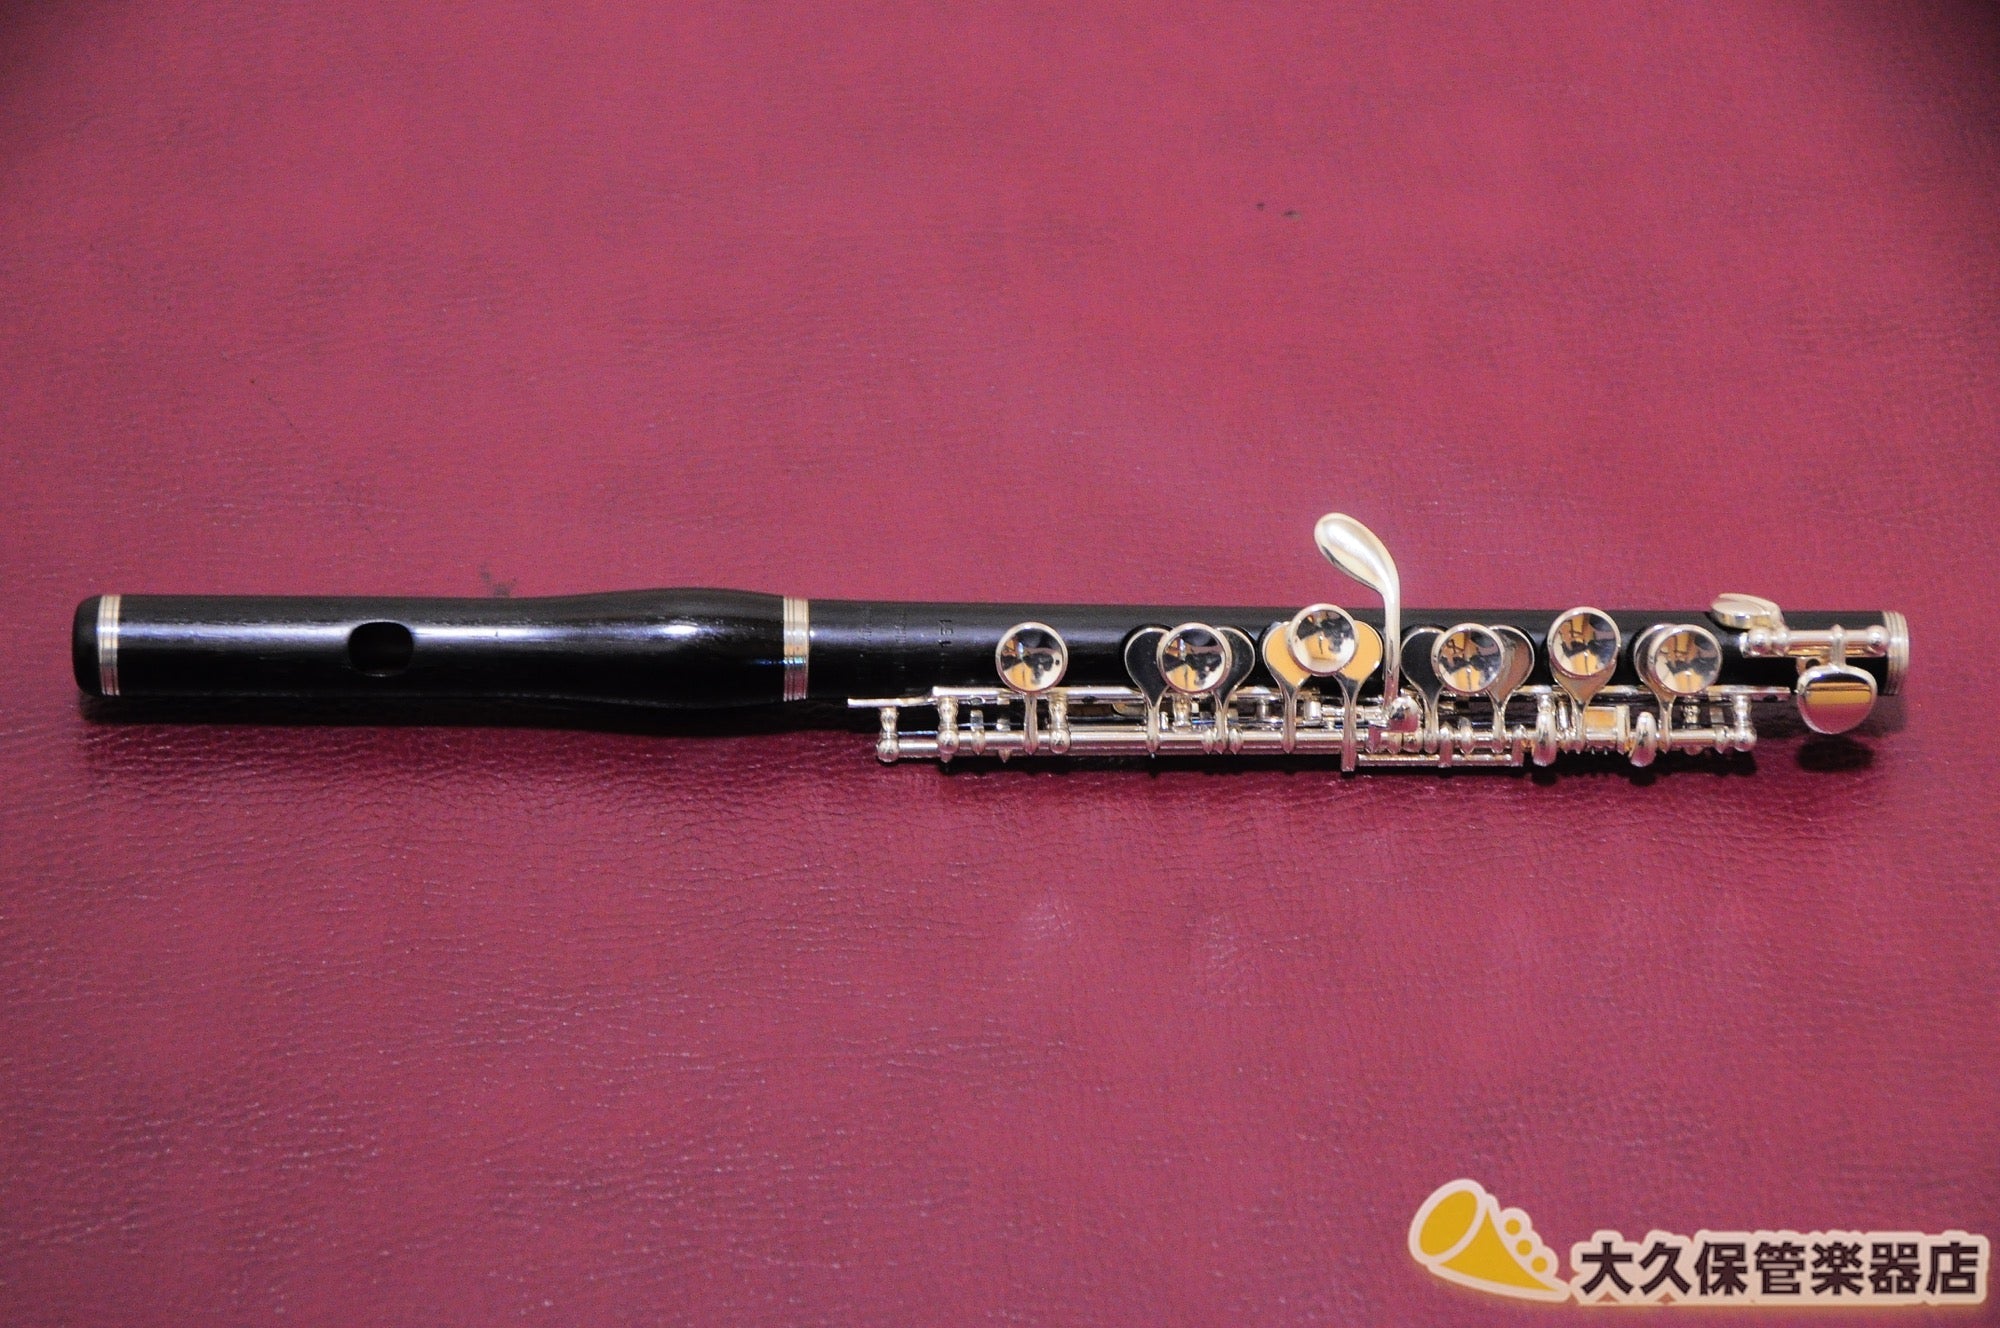 ヘインズ Wm.S. Haynes 総銀製 ピッコロ - 管楽器